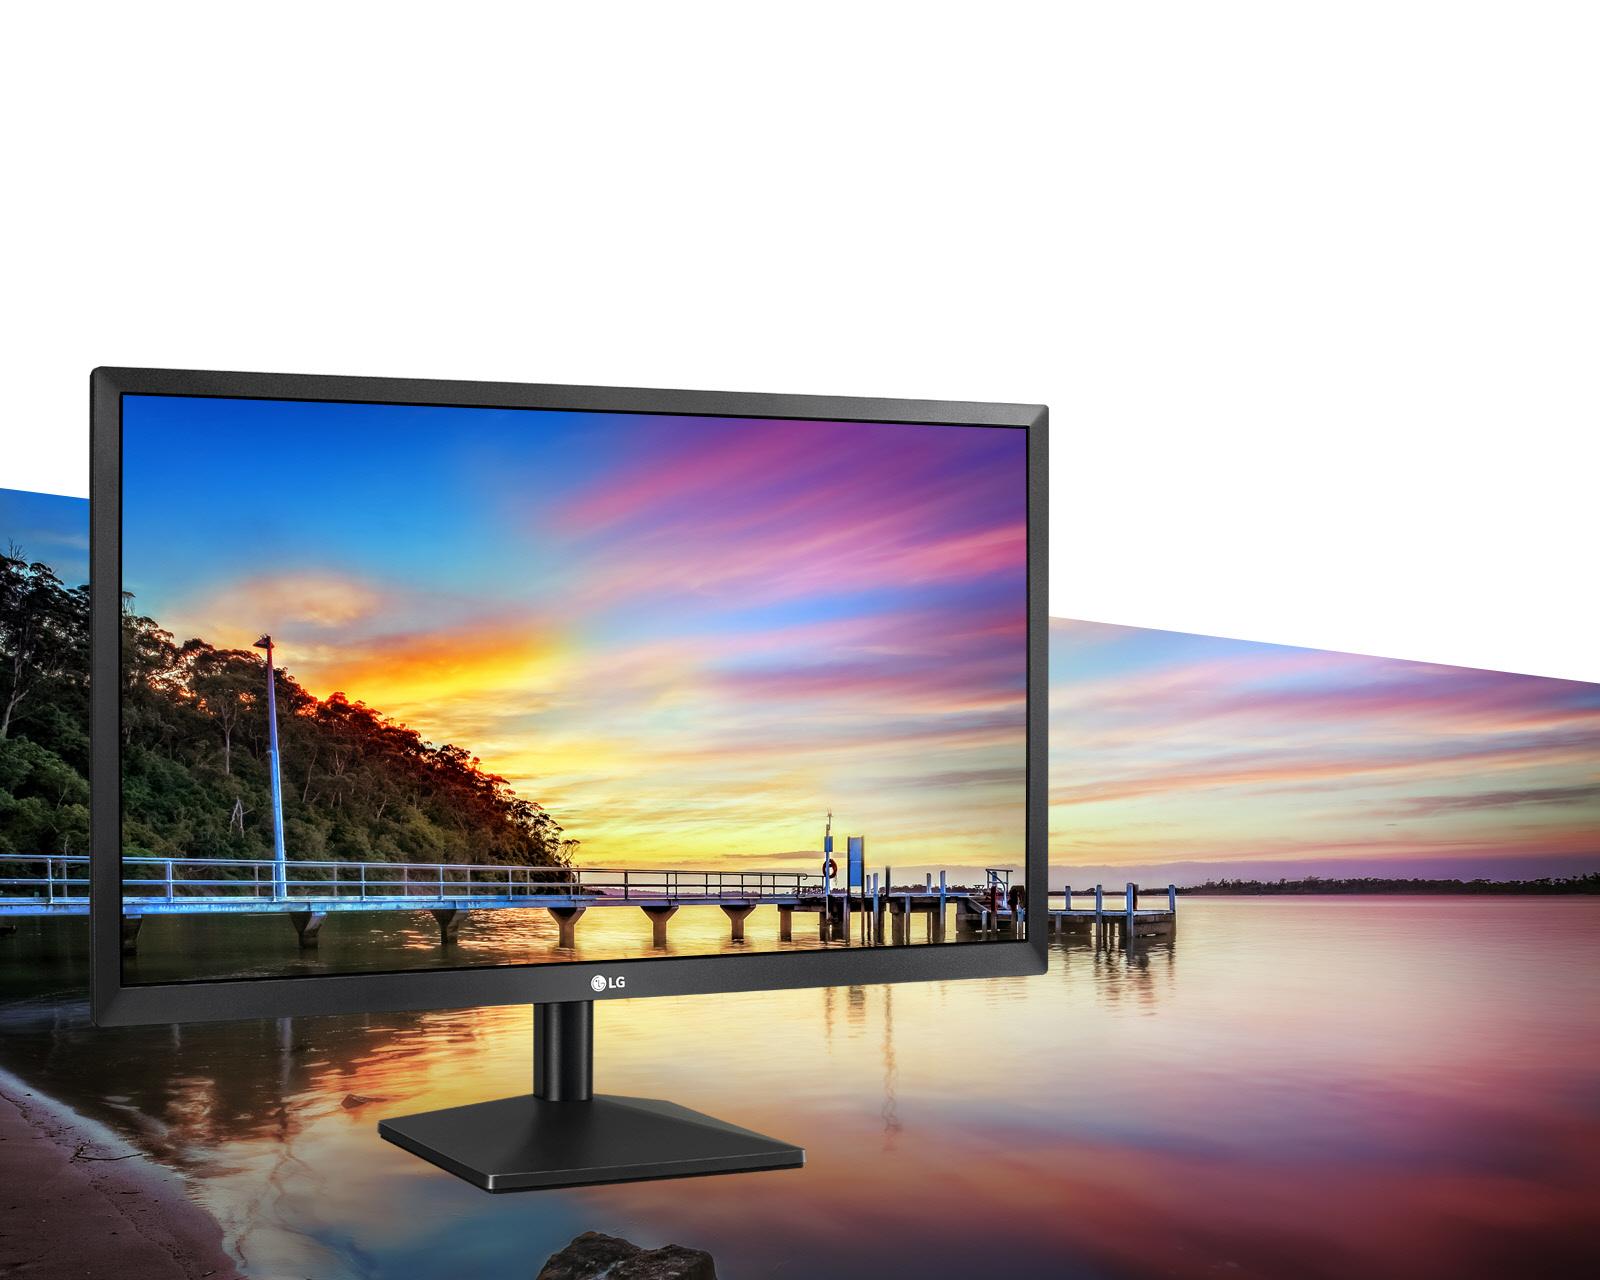 LG Electrónica Monitor LCD de pantalla de 24 pulgadas (24BK400H-B)